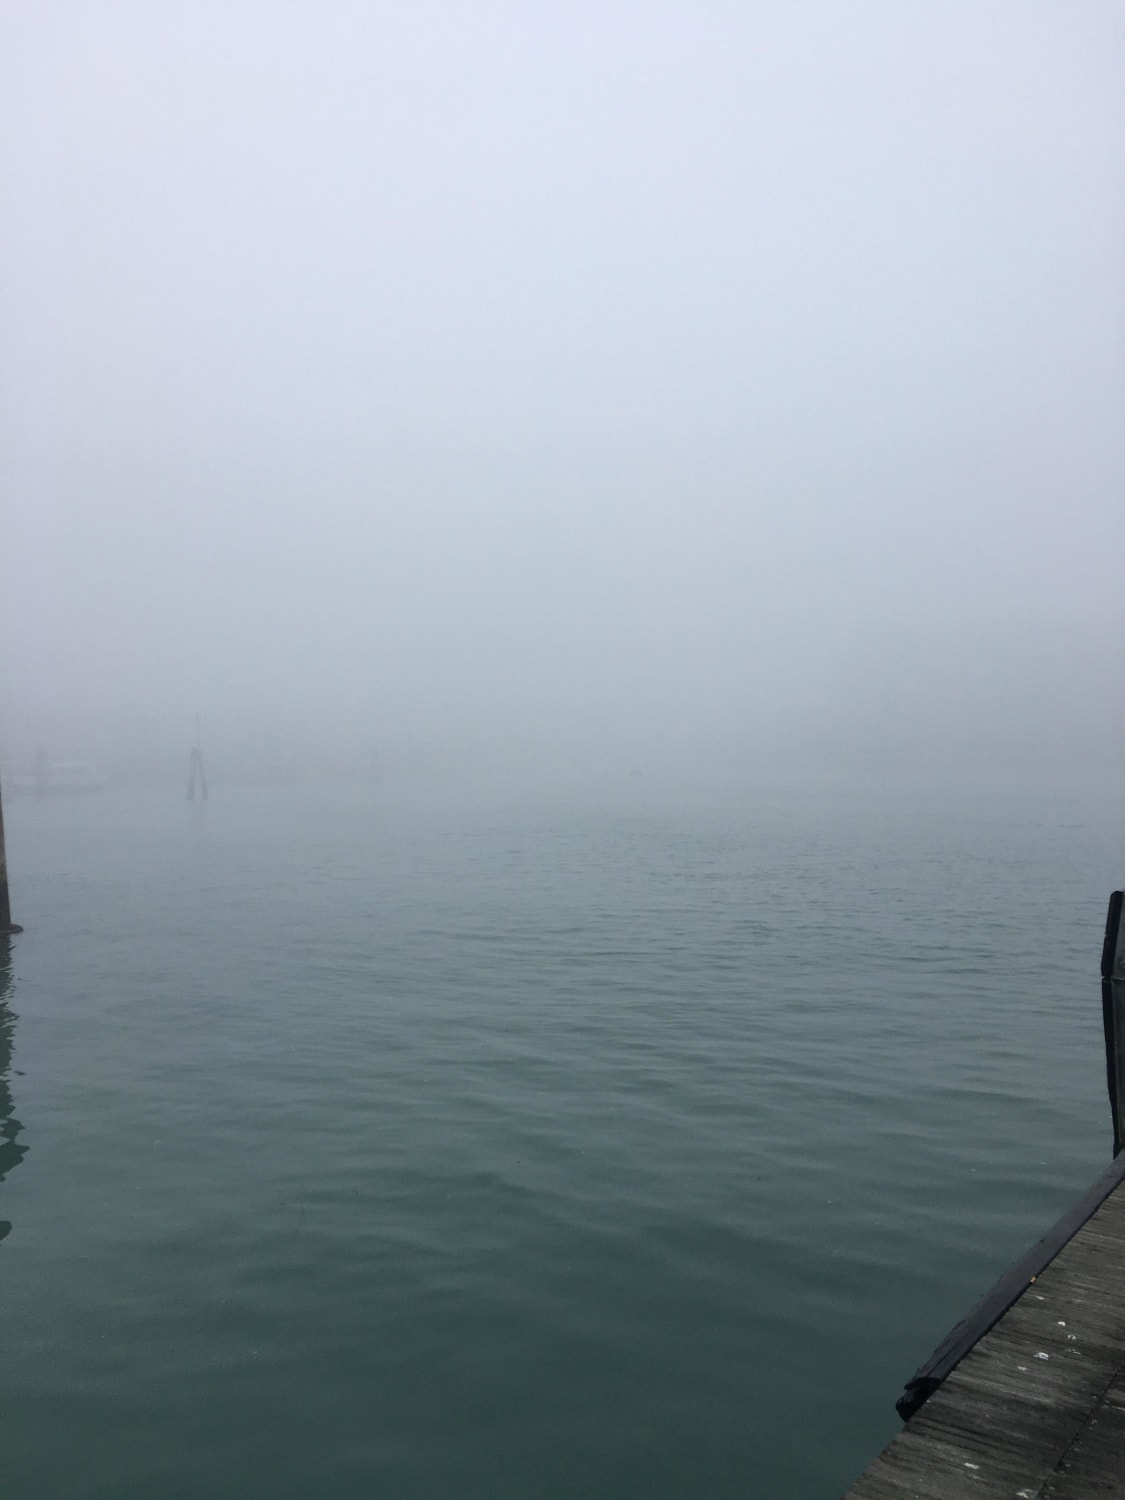 Venice Pier in January 2022. It gave me an eerie feeling